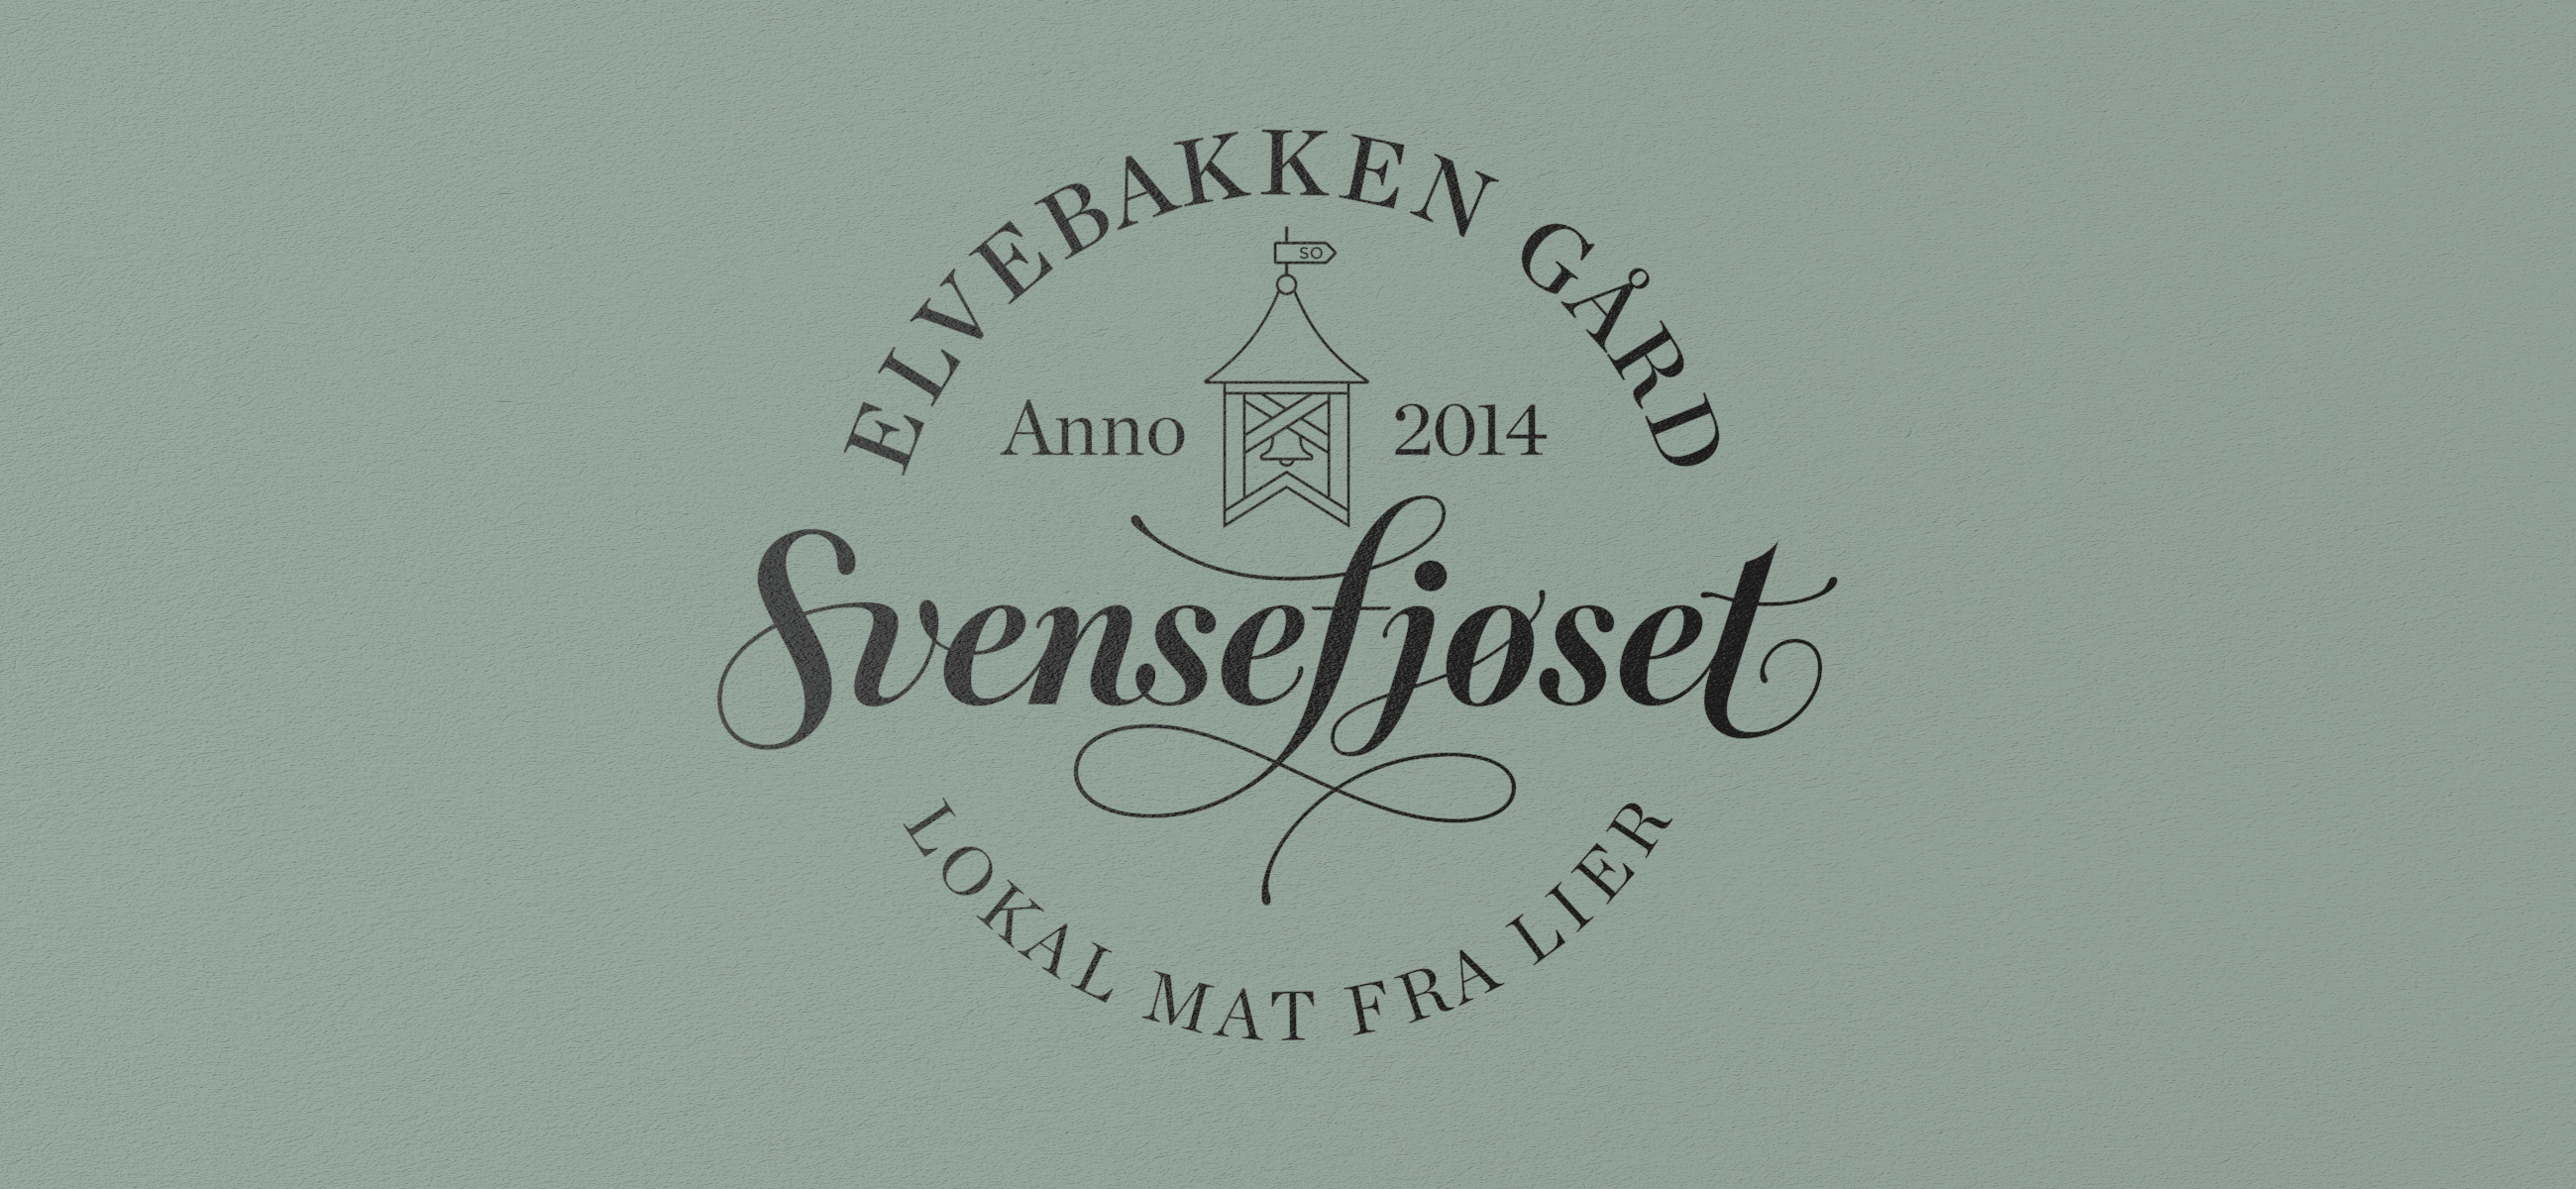 Elvebakken gård Svensefjøset øl beer logo. Visuell identitet Visual identity.